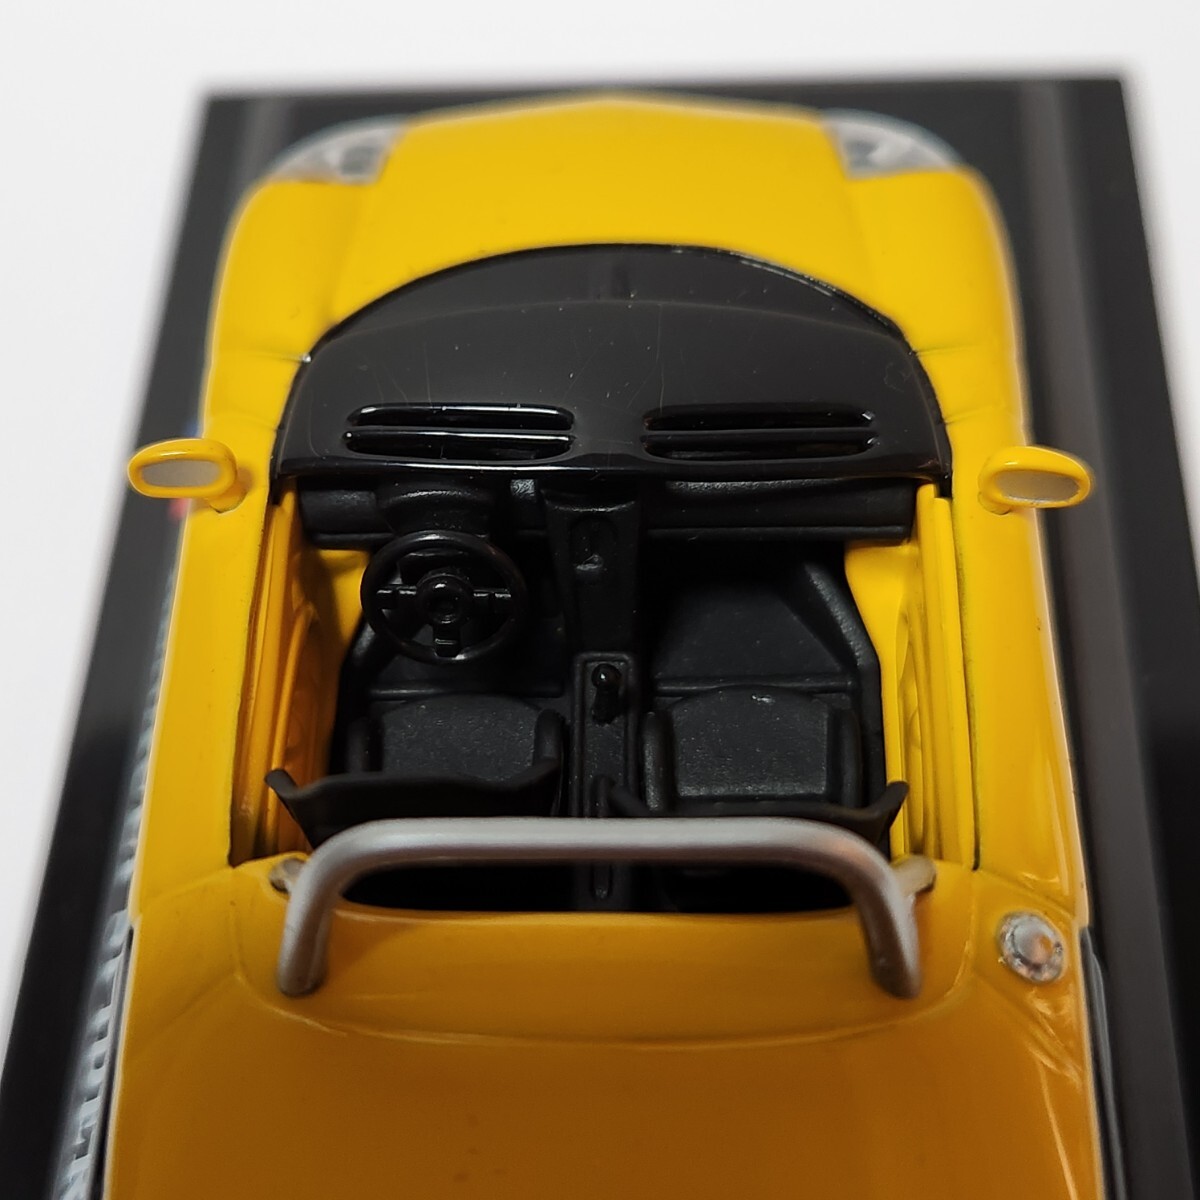 ミニカー RENAULT SPIDER デルプラドカーコレクション 世界の名車コレクション スケール1/43 イエローブラック ケース付き _画像7